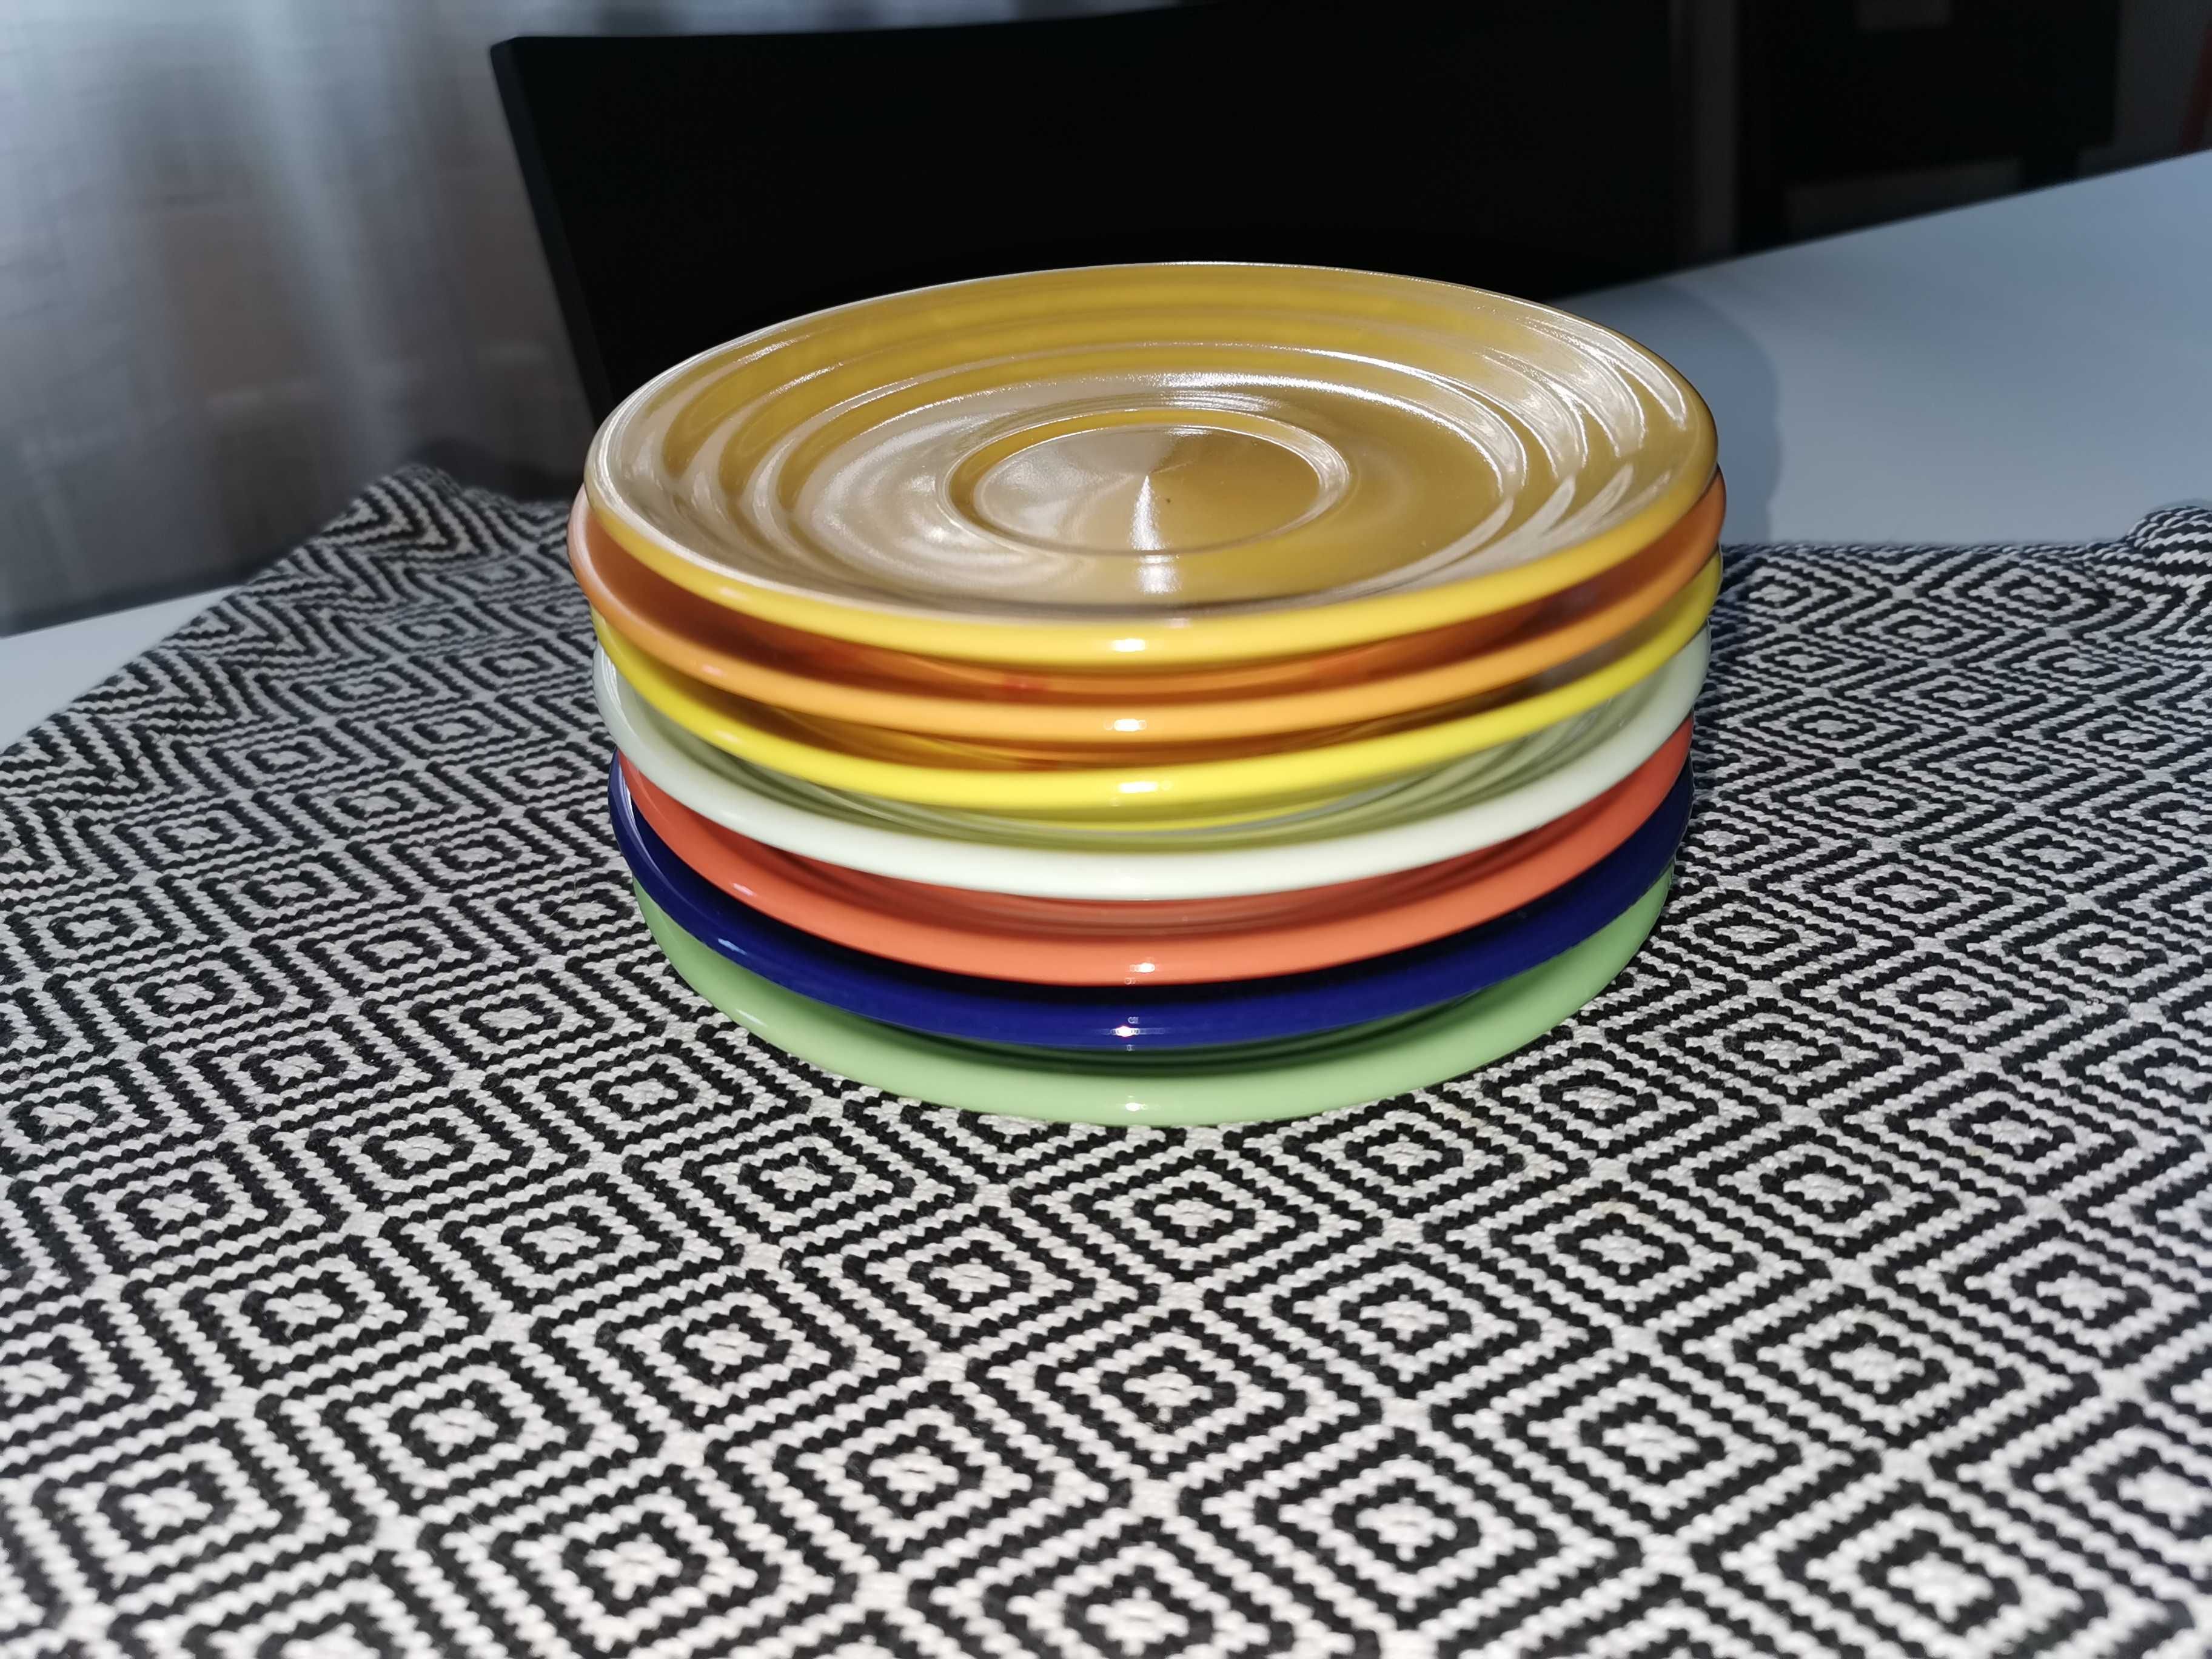 Kolorowe posiłki w plenerze turystyka naczynia